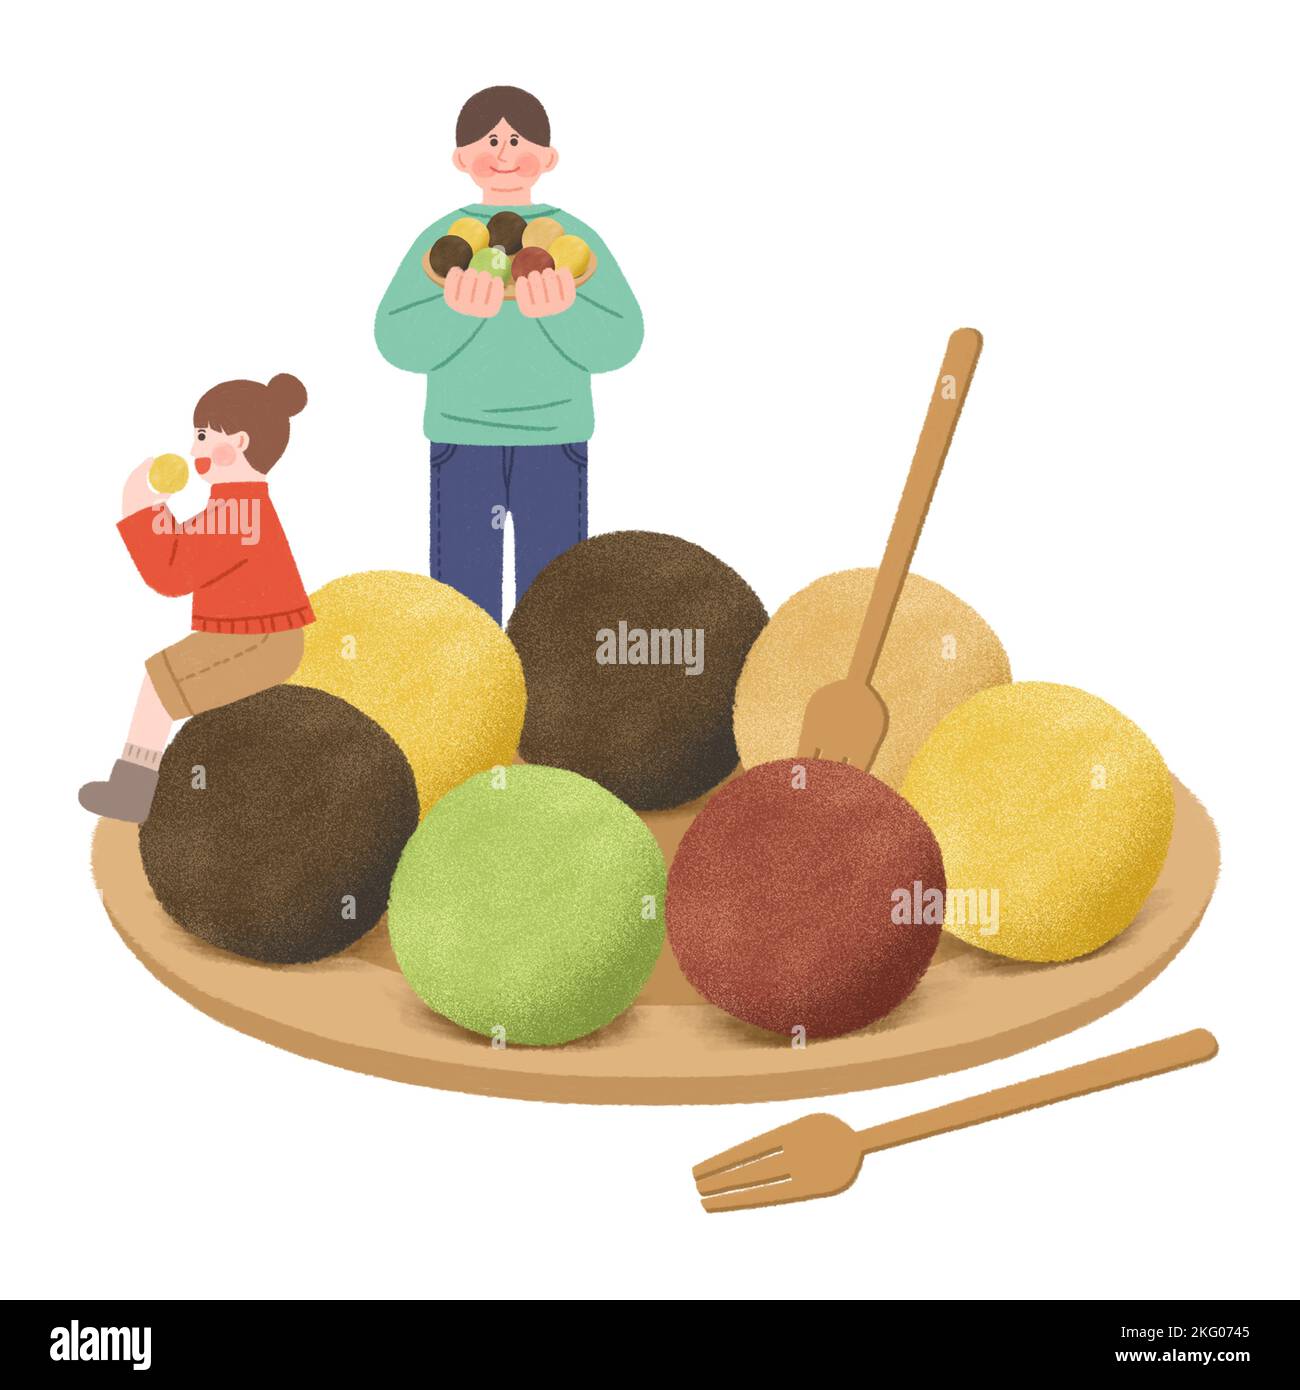 comida callejera de invierno coreana ilustration arroces cakes Foto de stock